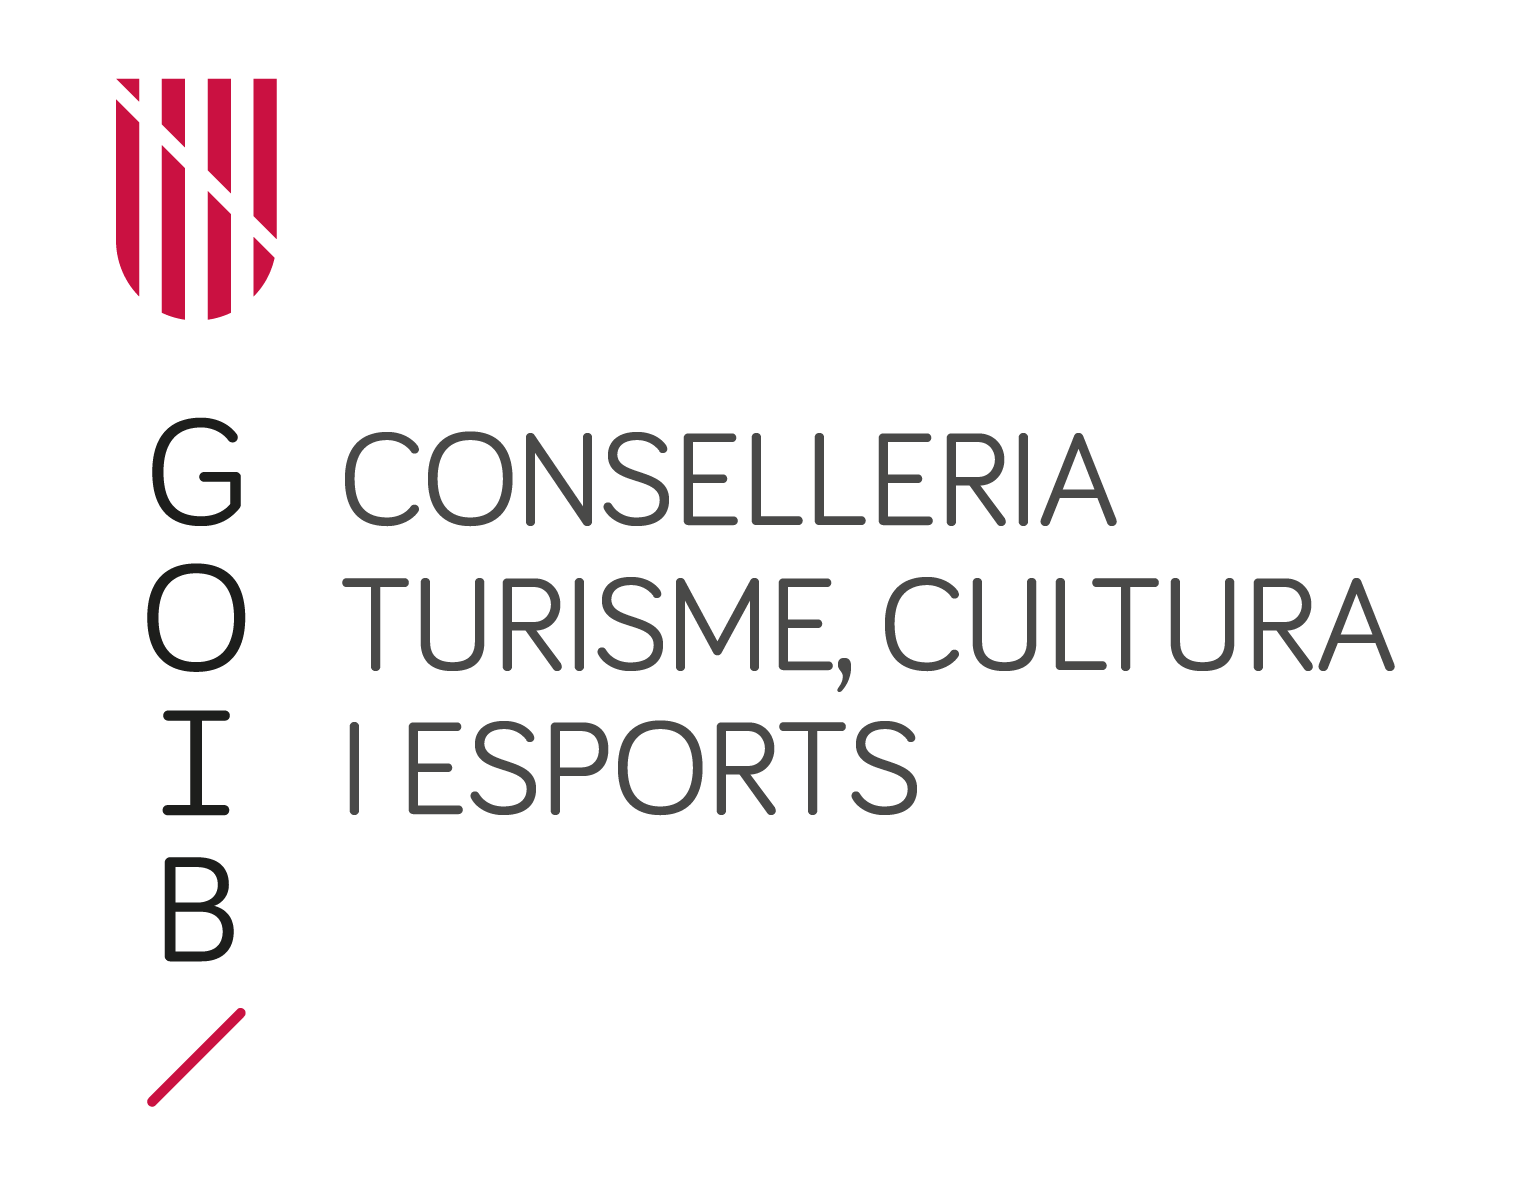 Consejería de Turisme, Cultura i Esports